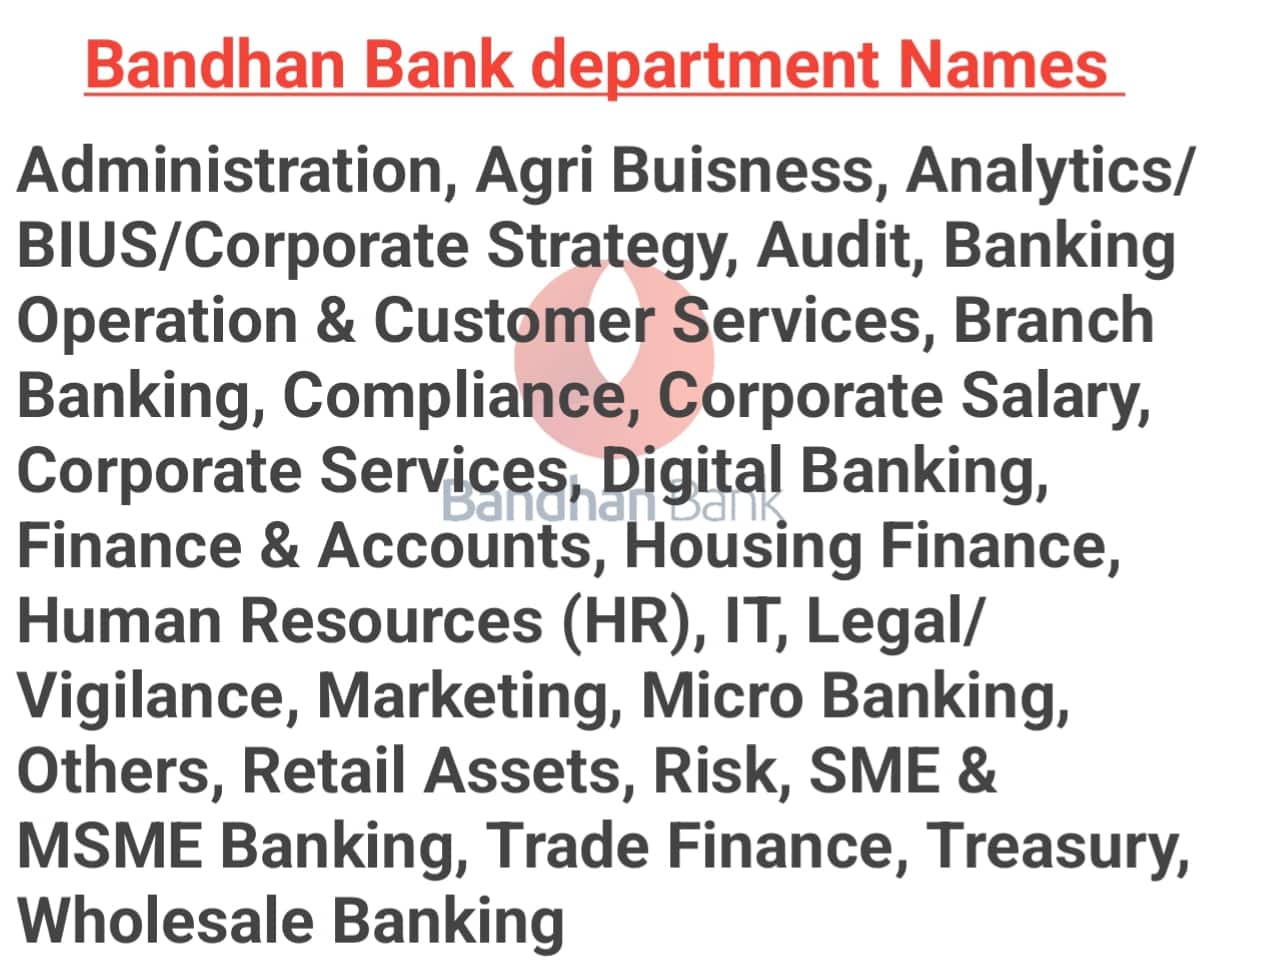 Bandhan Bank department name